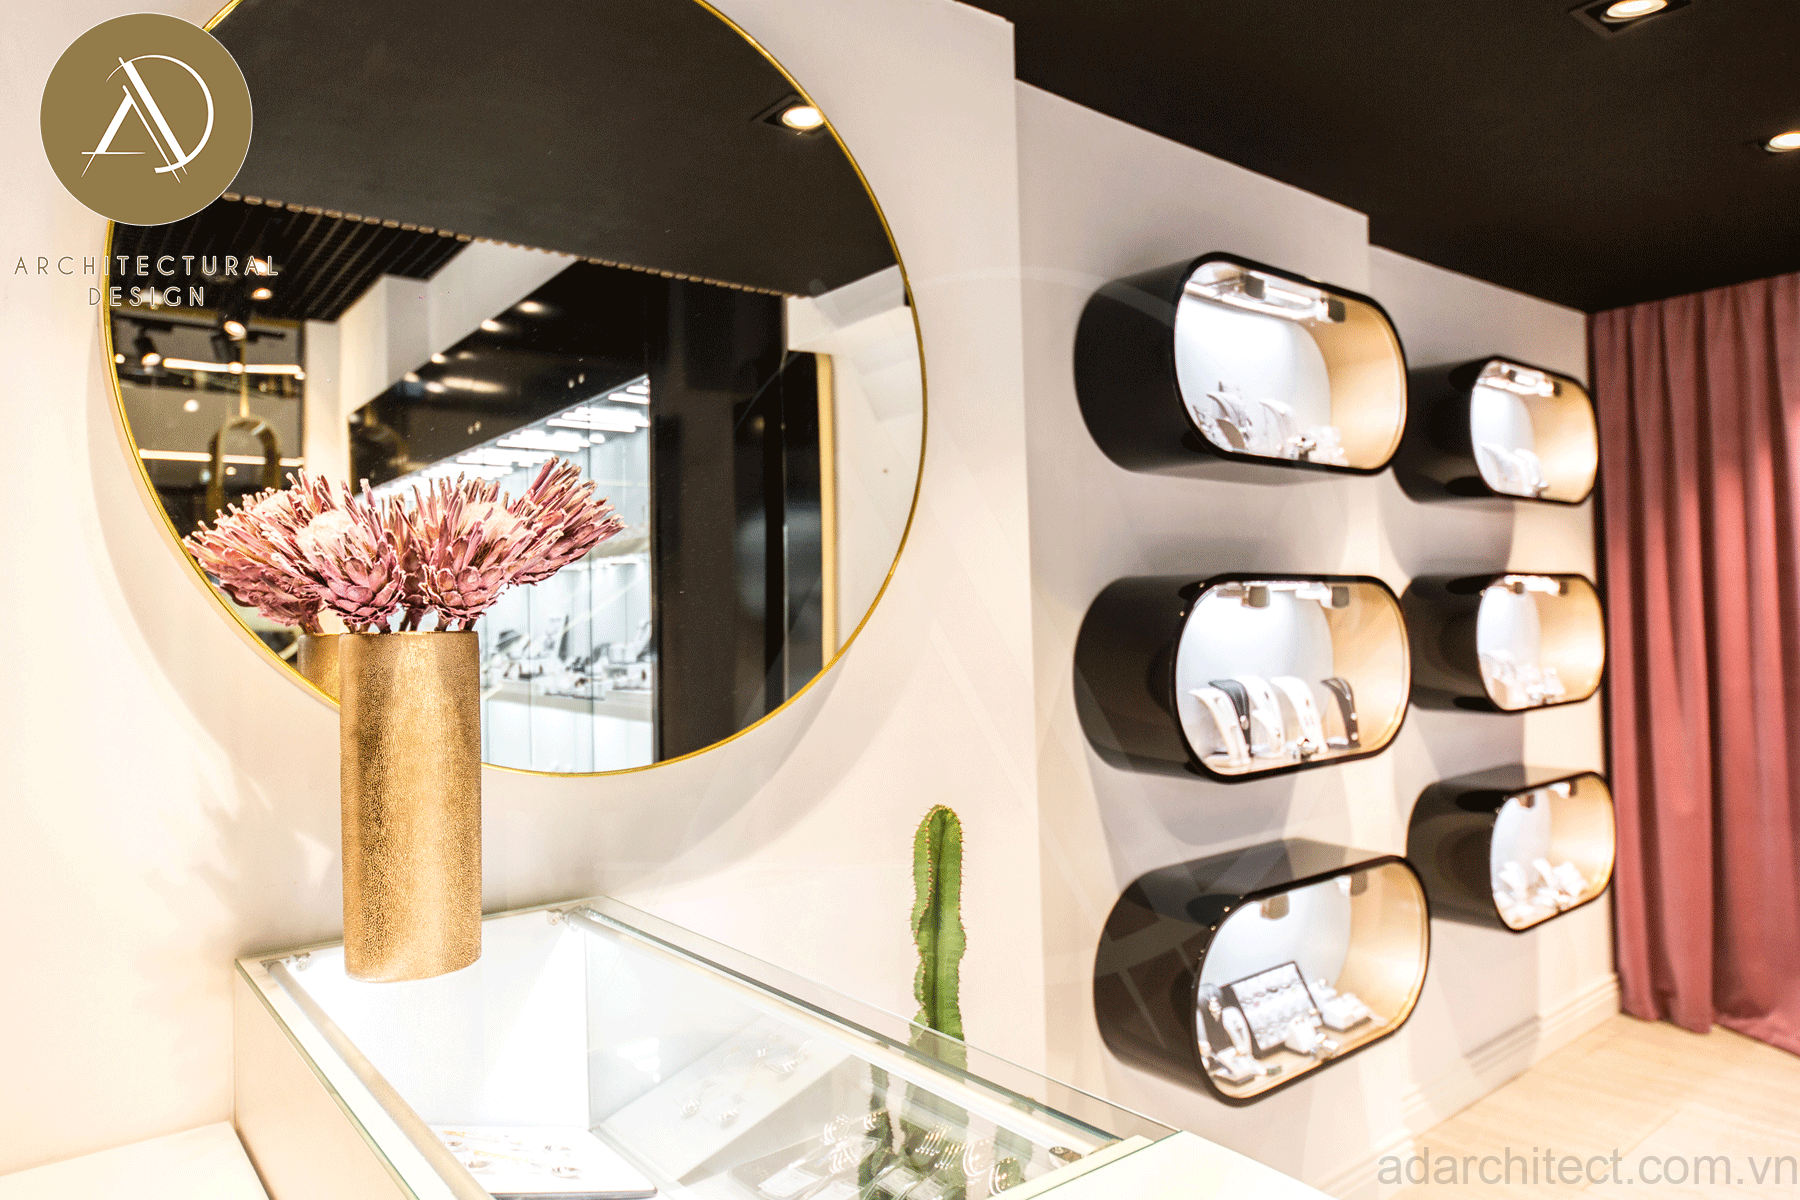 Thiết kế tiệm vàng: gương được bố trí cho khách hàng tiện xem khi thử trang sức và phù hợp phong thủy